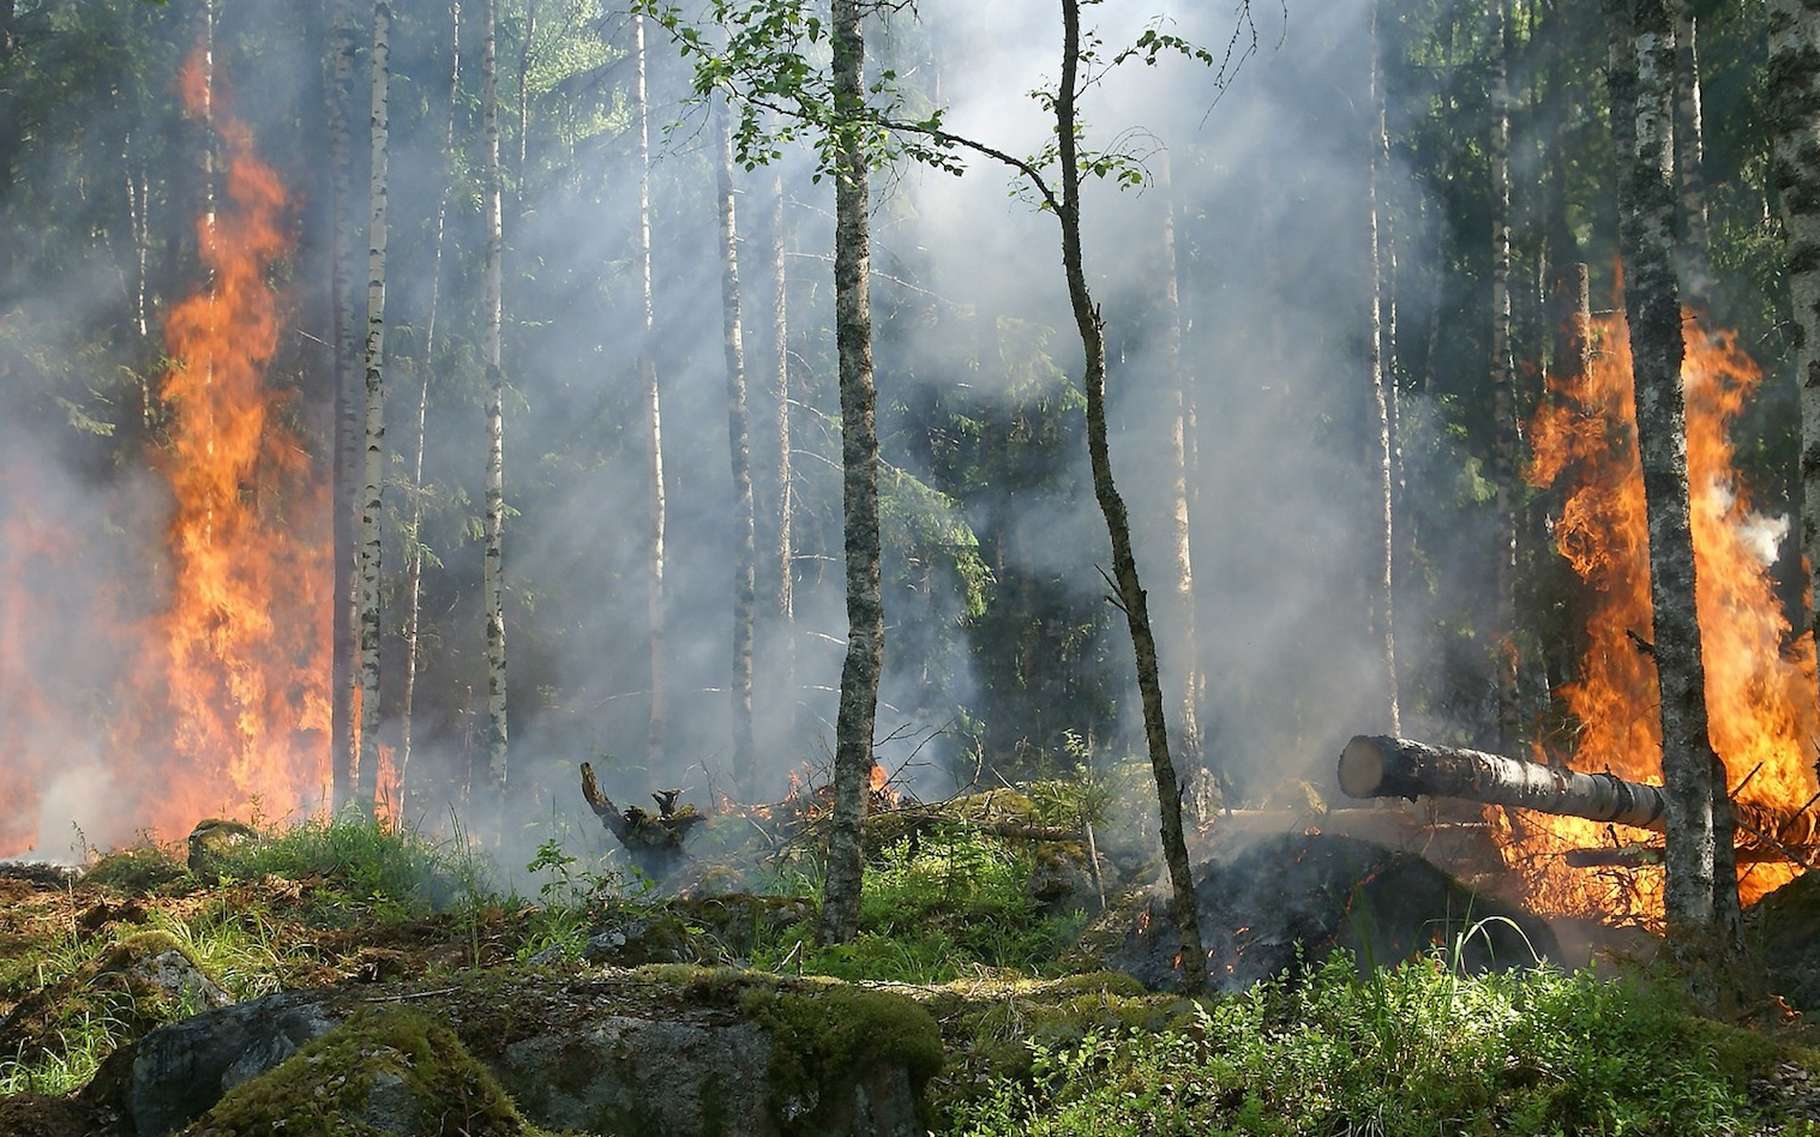 Lorsqu’un feu, qu’il soit d’origine naturelle ou anthropique, dévaste une forêt, il faut des années avant que la nature renaisse. © Ylvers, Pixabay, CC0 Public Domain